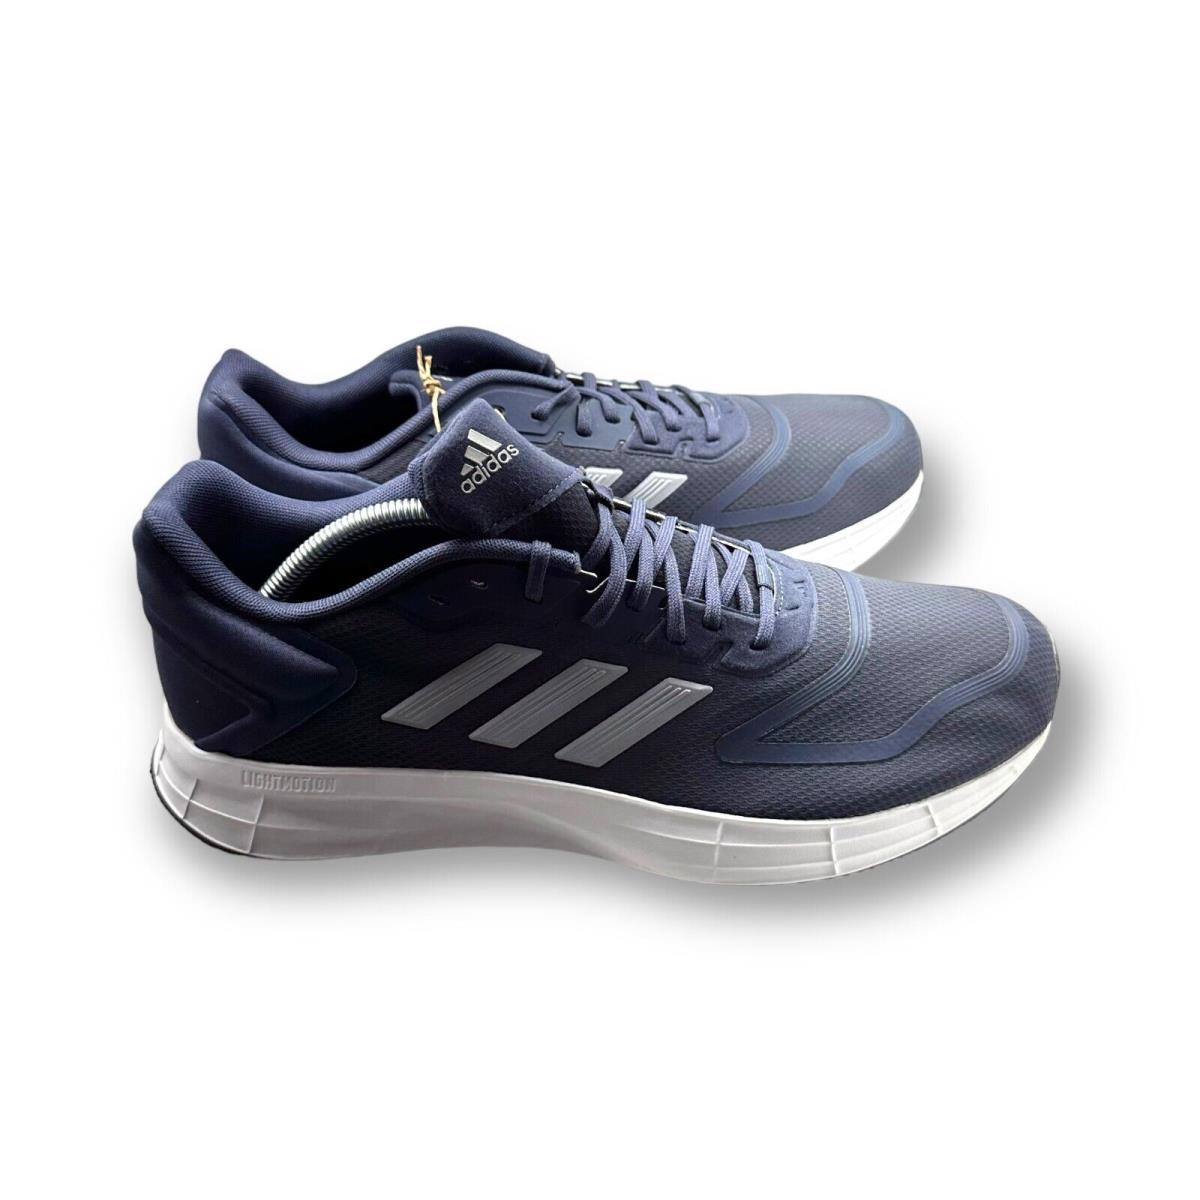 Adidas Doramo 10 Men s Shoes - Dark Blue - Sz 11.5